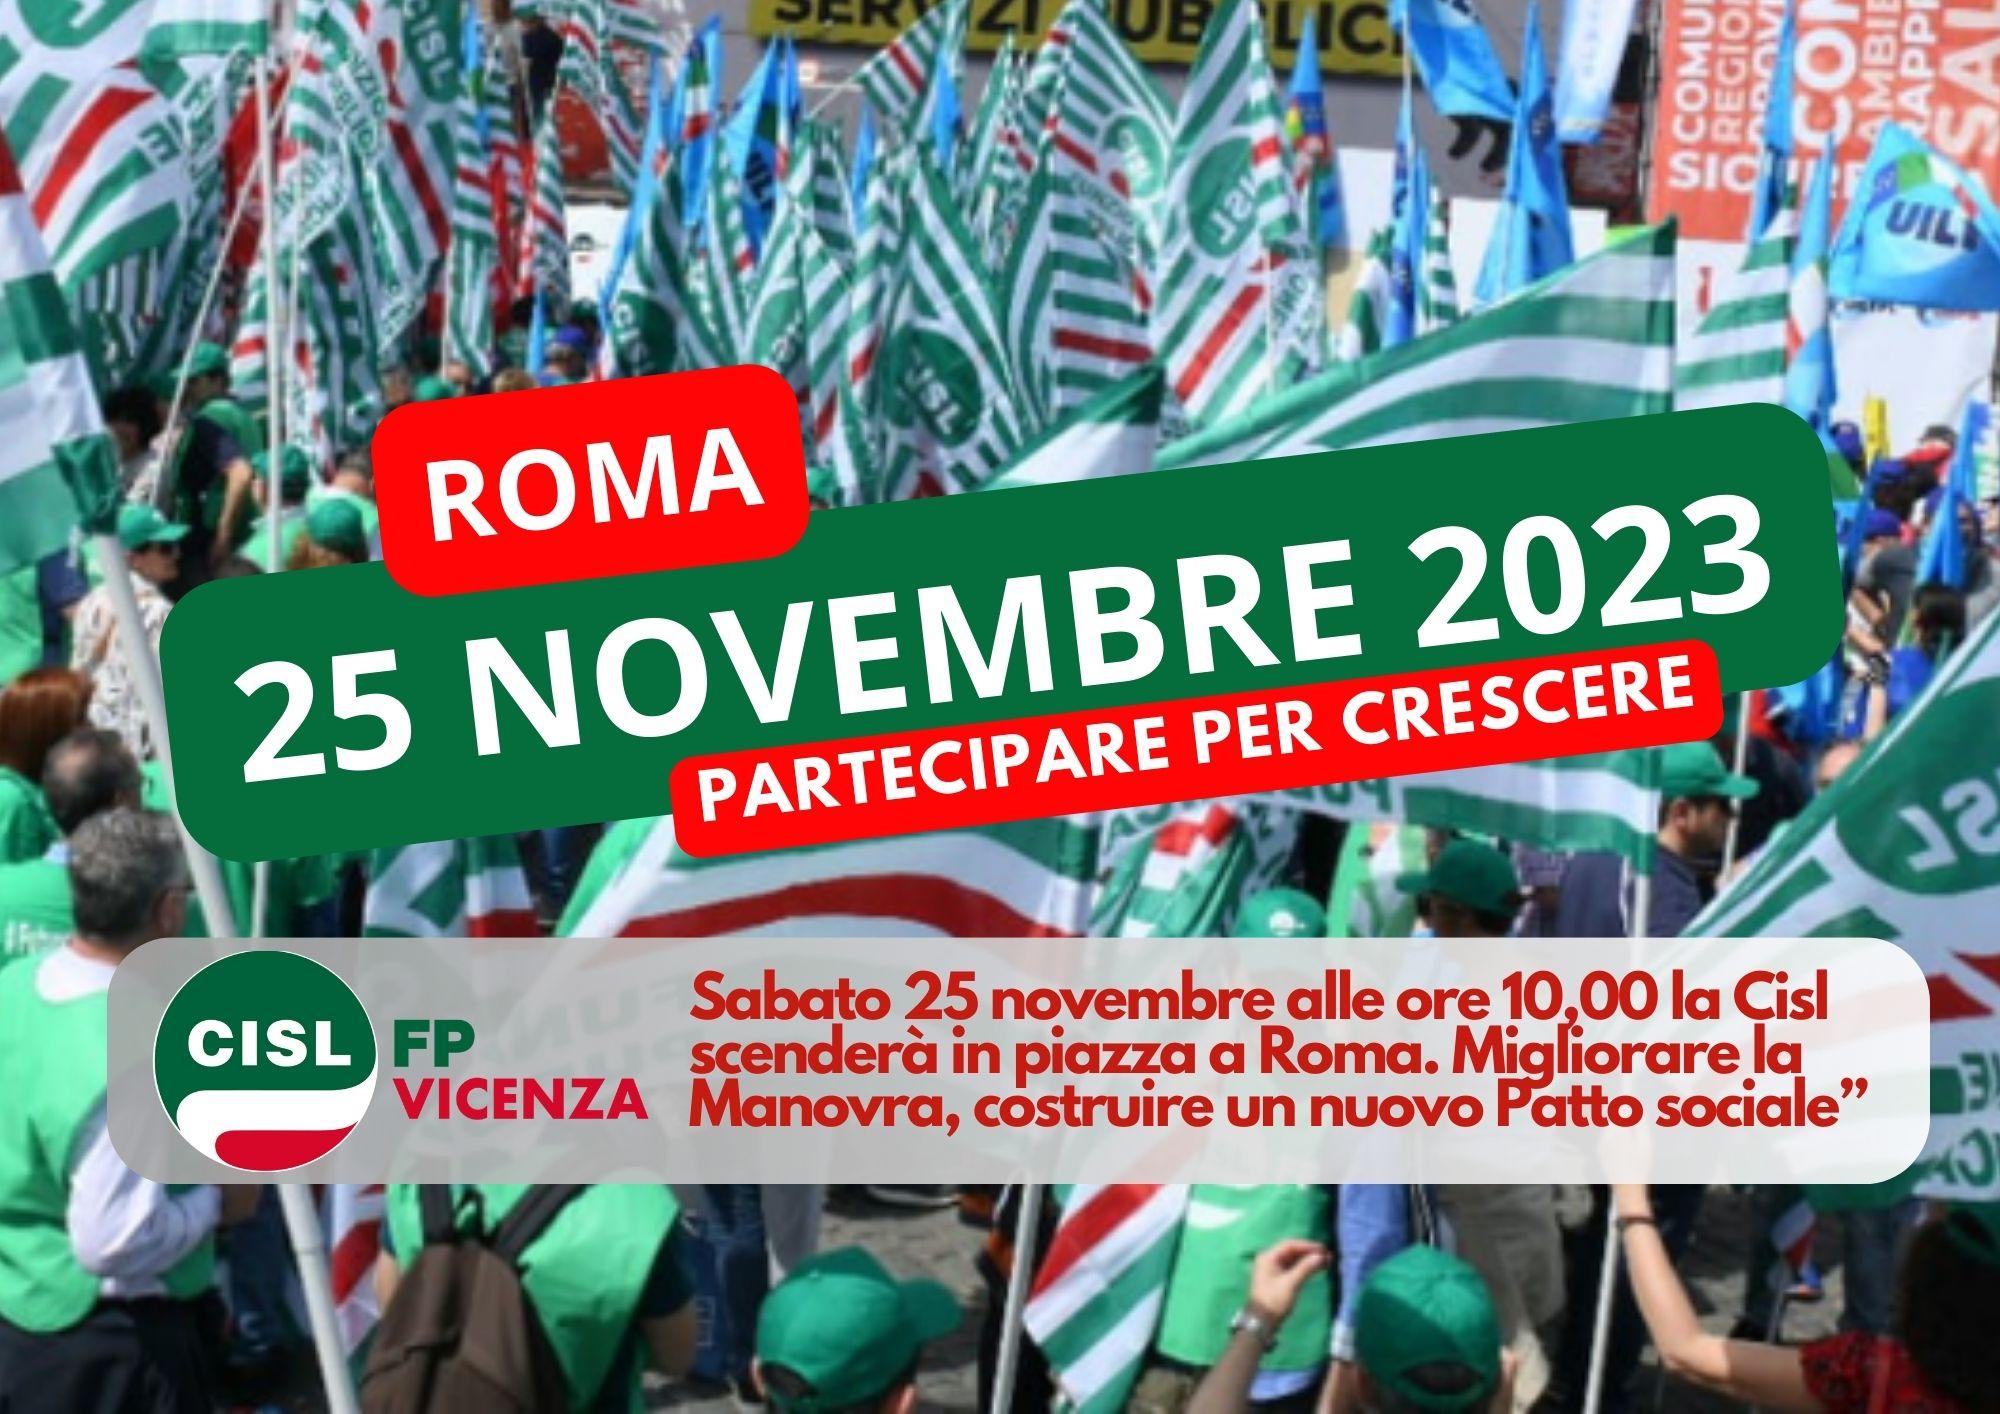 CISL FP Vicenza. Manovra finanziaria: Sabato 25 novembre manifestazione nazionale Cisl a Roma